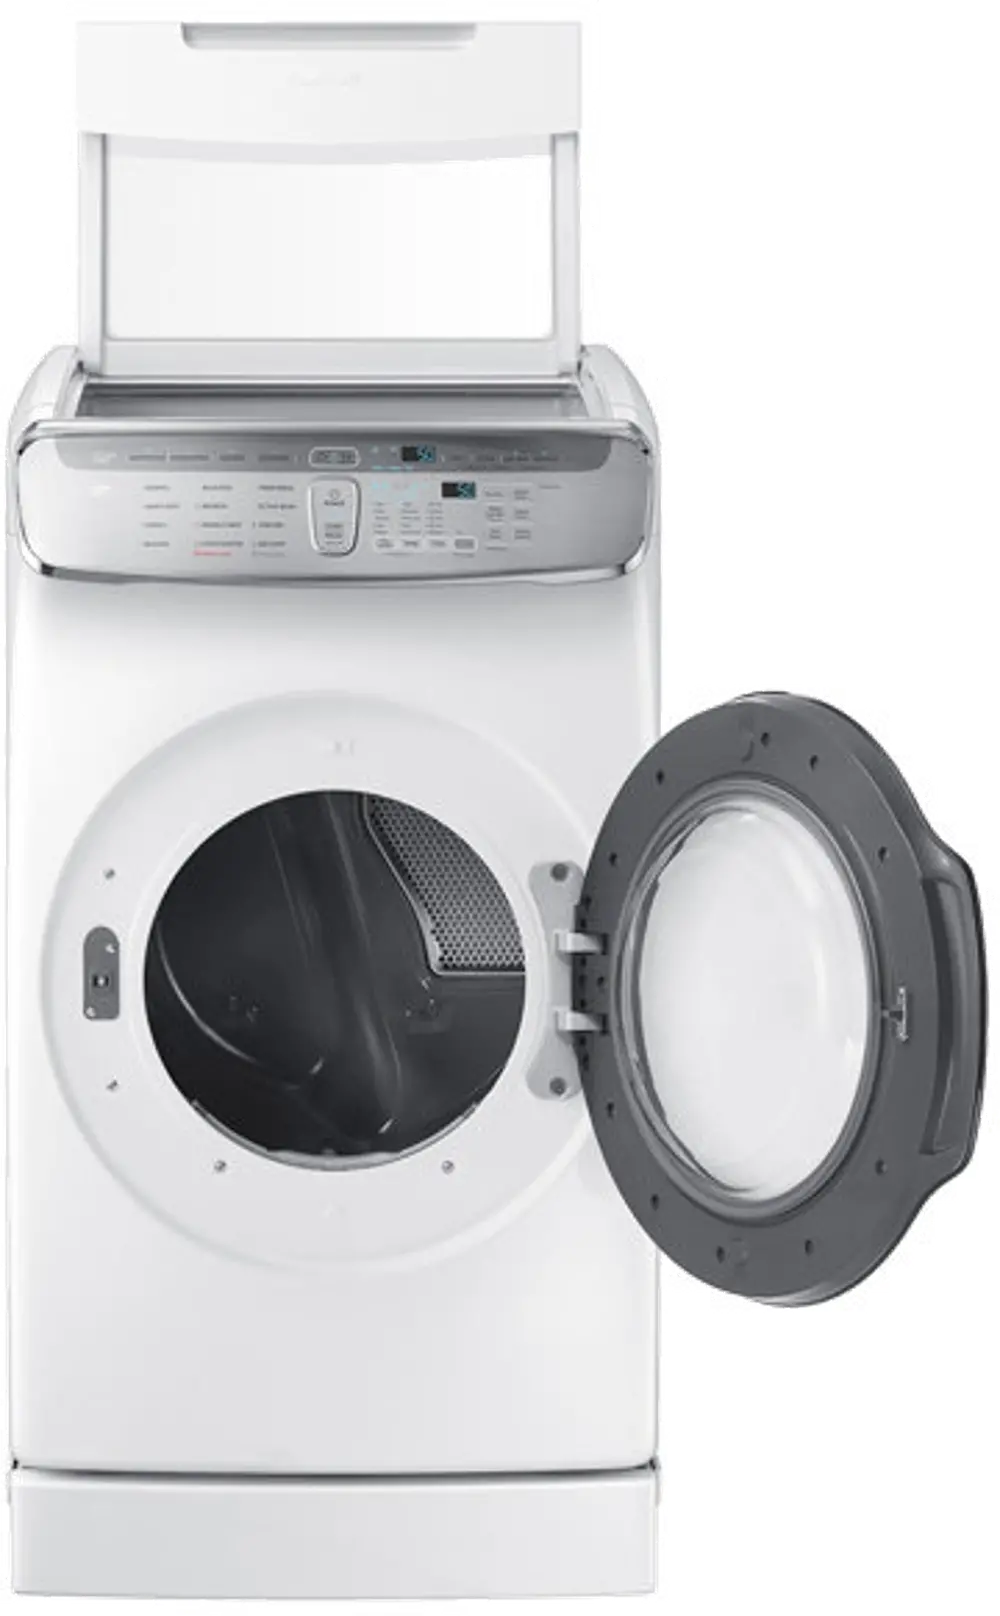 DVG60M9900W Samsung Gas FlexDry Dryer with Steam - 7.5 Cu. Ft. White-1